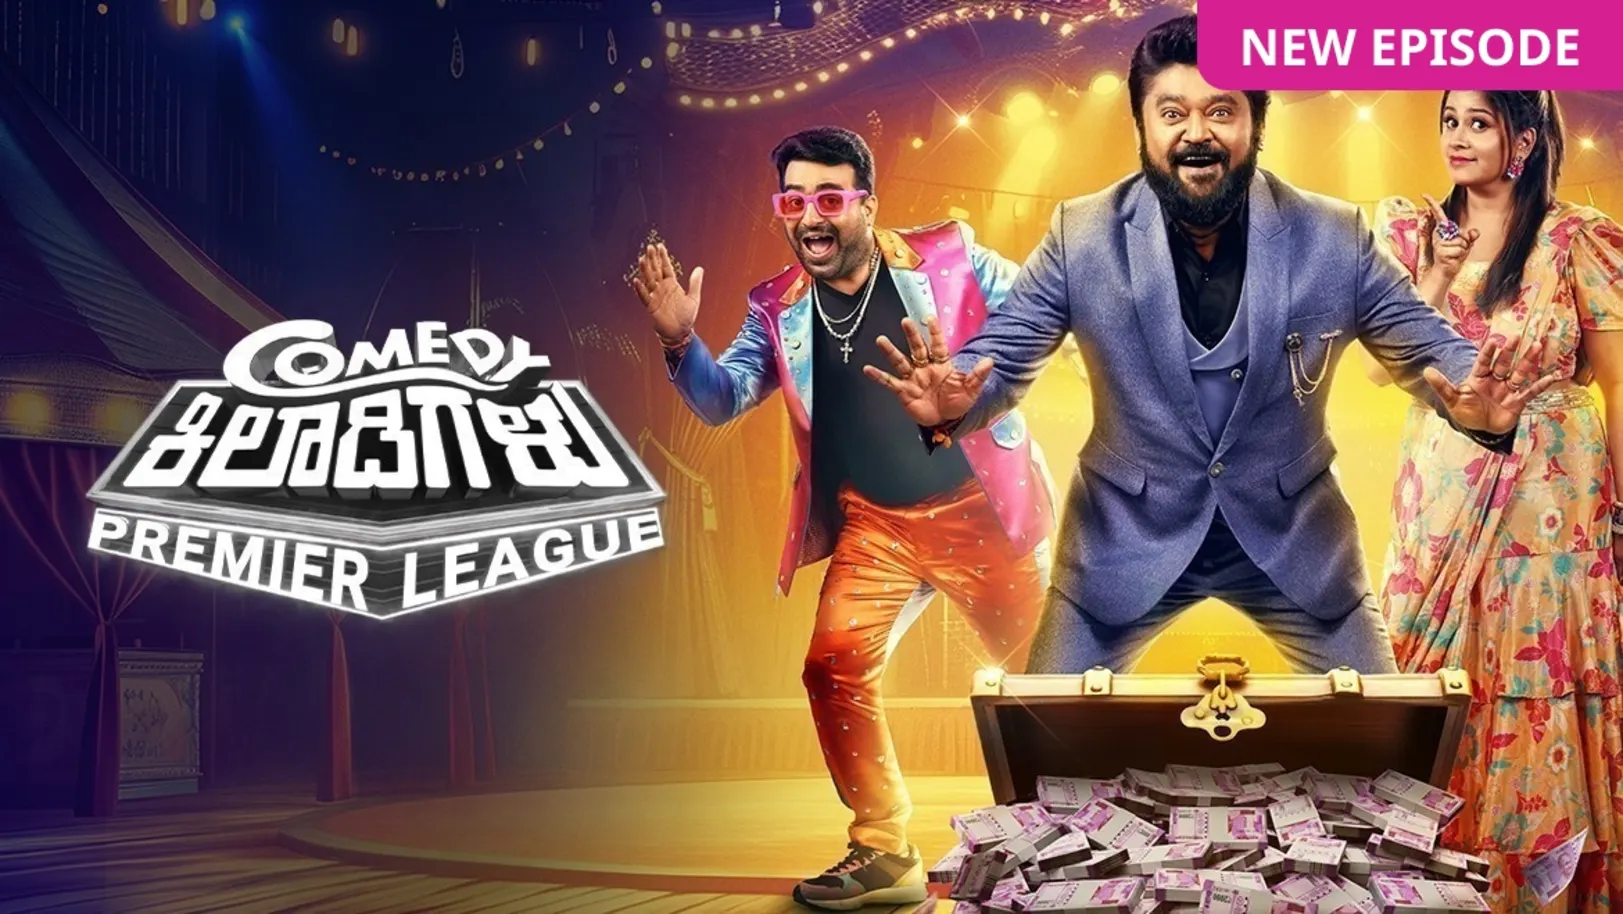 Comedy Khiladigalu Premier League TV Show